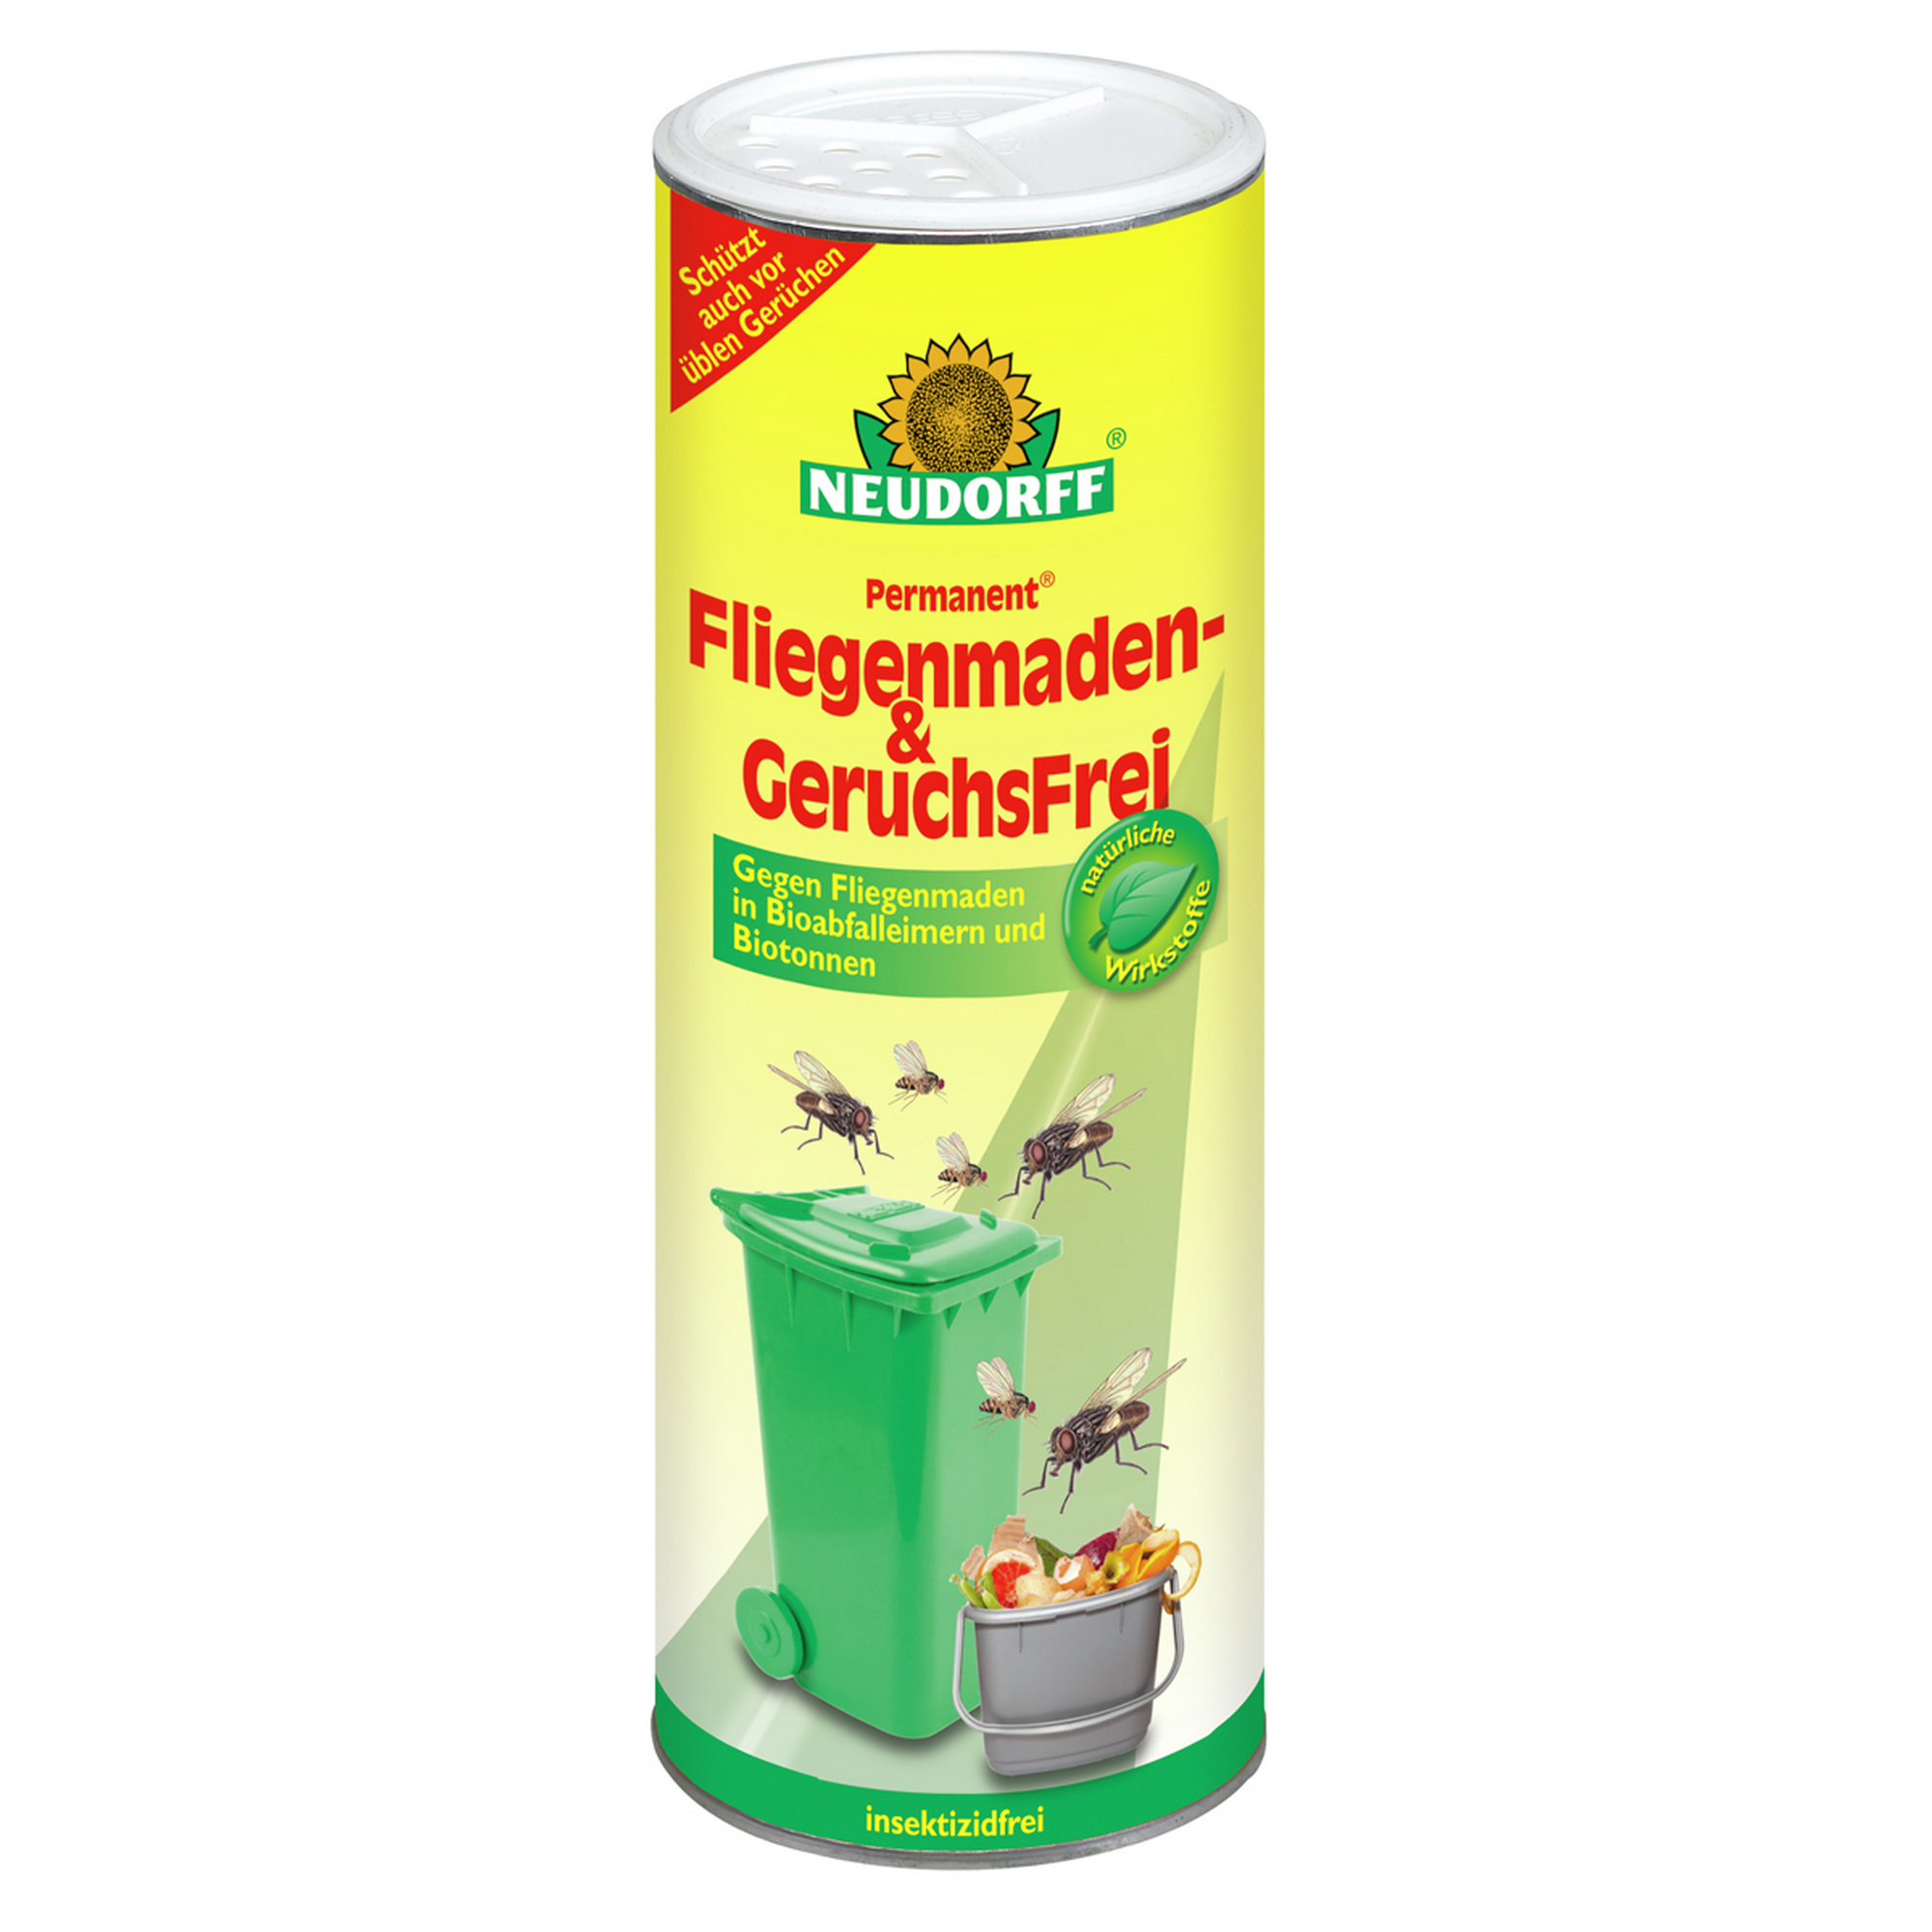 Permanent Fliegenmaden- und Geruchsfrei + product picture